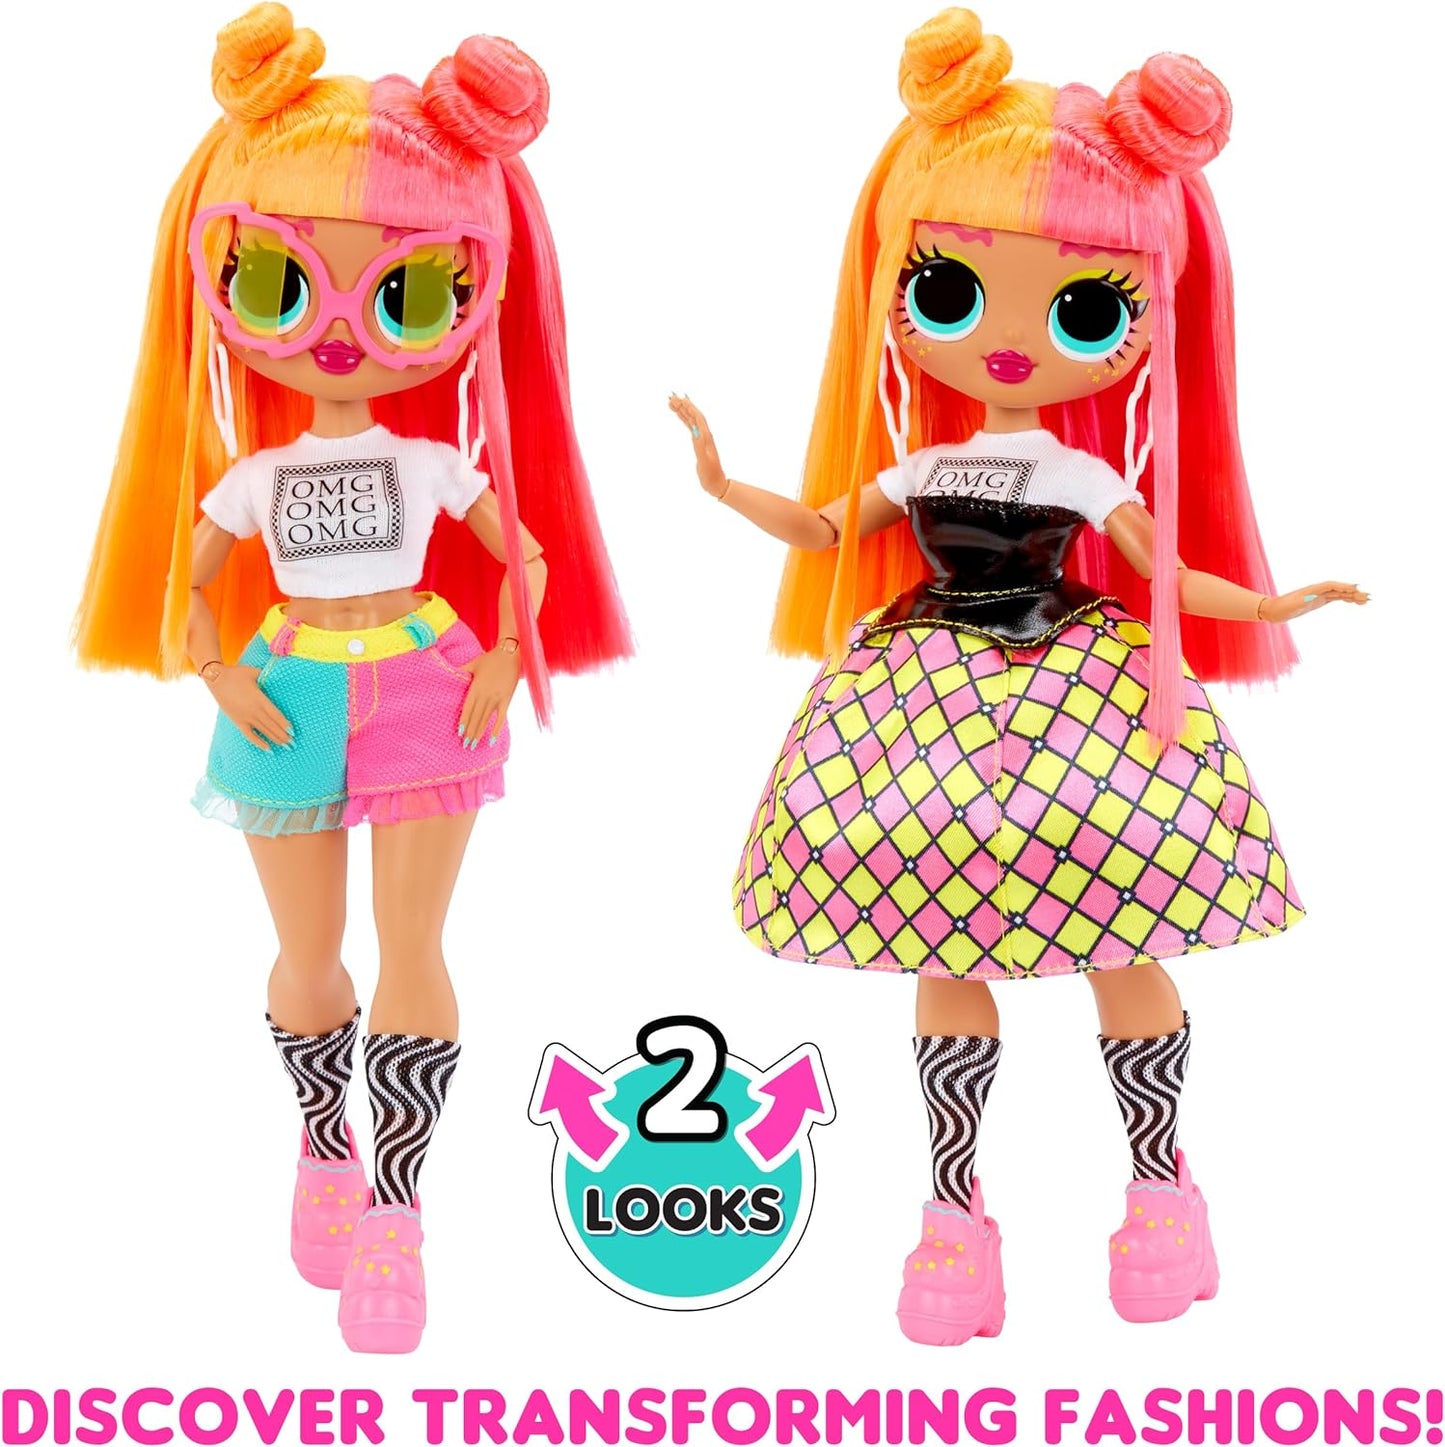 LOL Surprise Boneca fashion OMG - Swag - com várias surpresas, incluindo modas transformadoras e acessórios fabulosos - ótima para crianças a partir de 4 anos